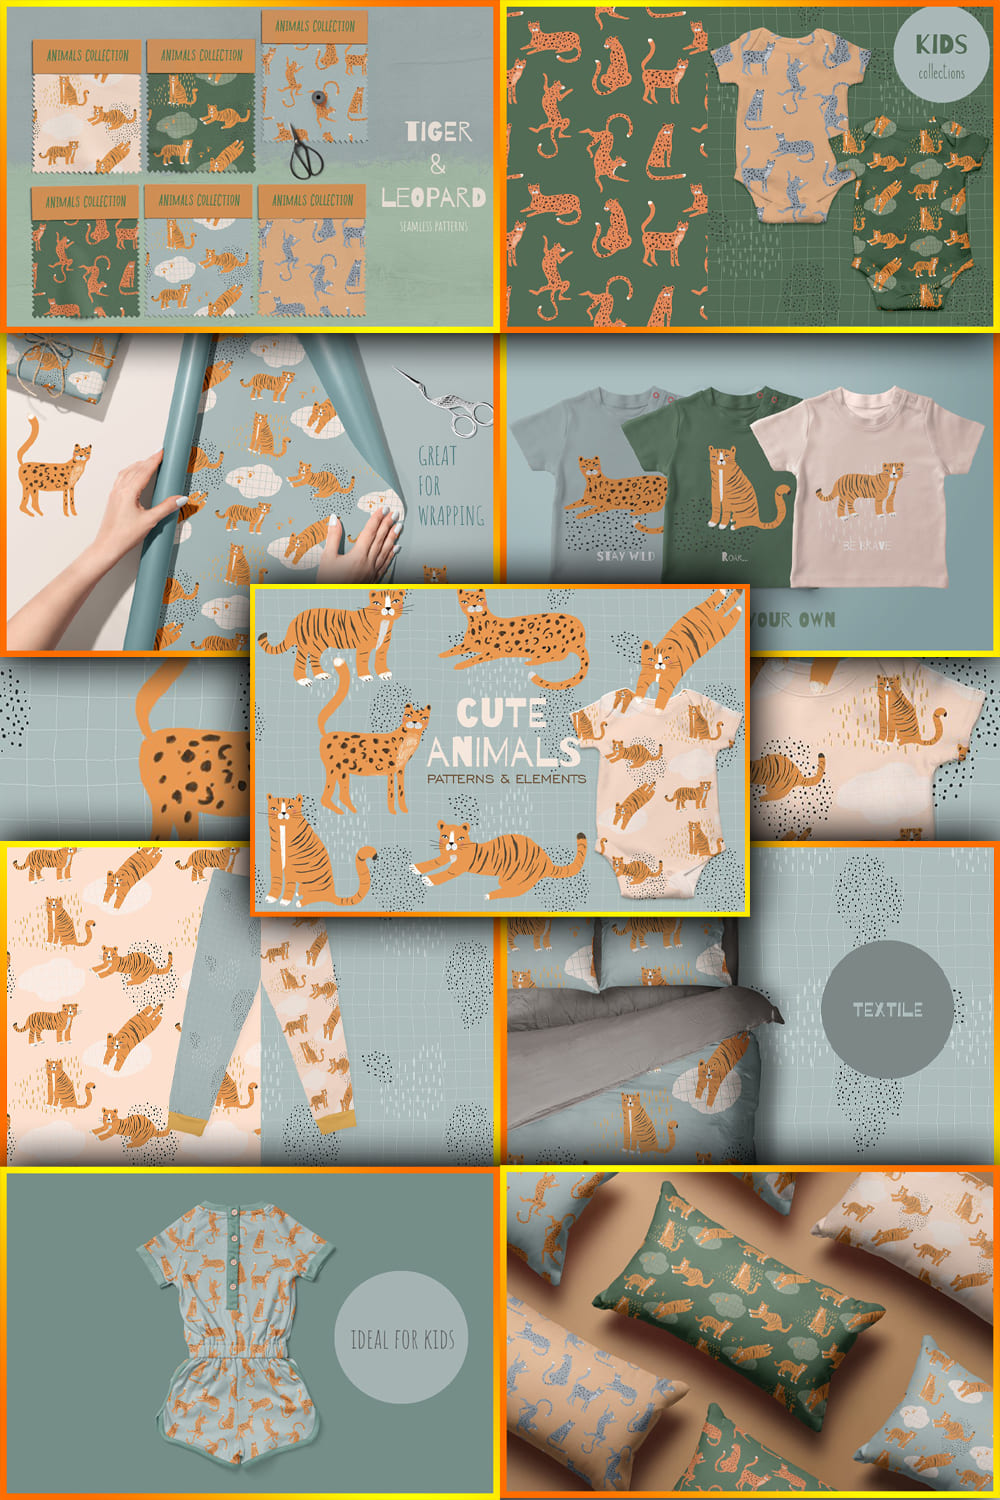 Wild Animals Patterns - Pinterest.